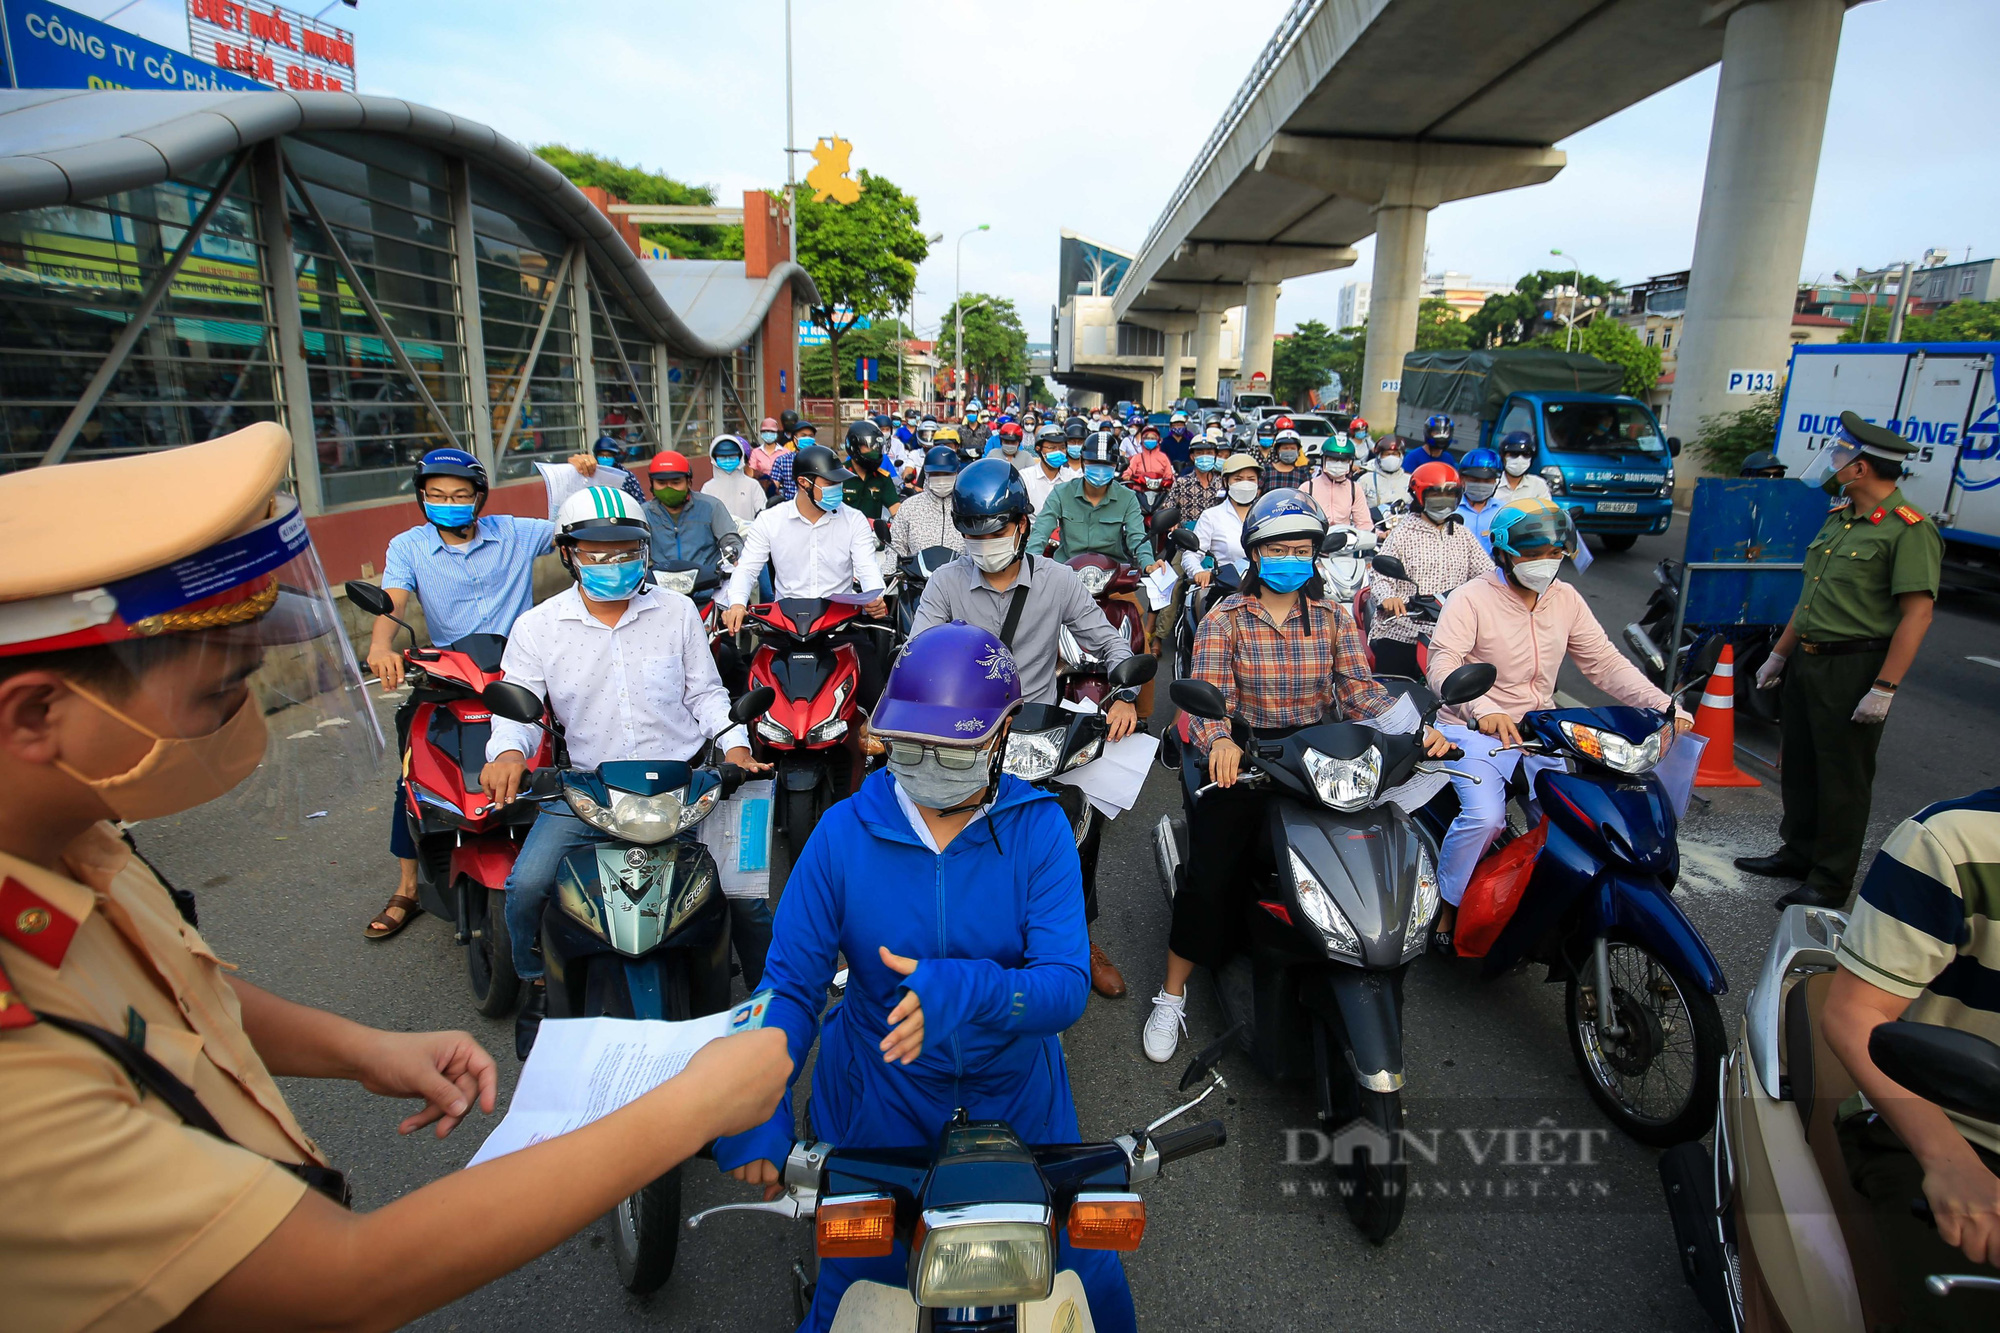 Đường phố Hà Nội vẫn đông đúc khi vùng 1 tiếp tục giãn cách xã hội - Ảnh 2.